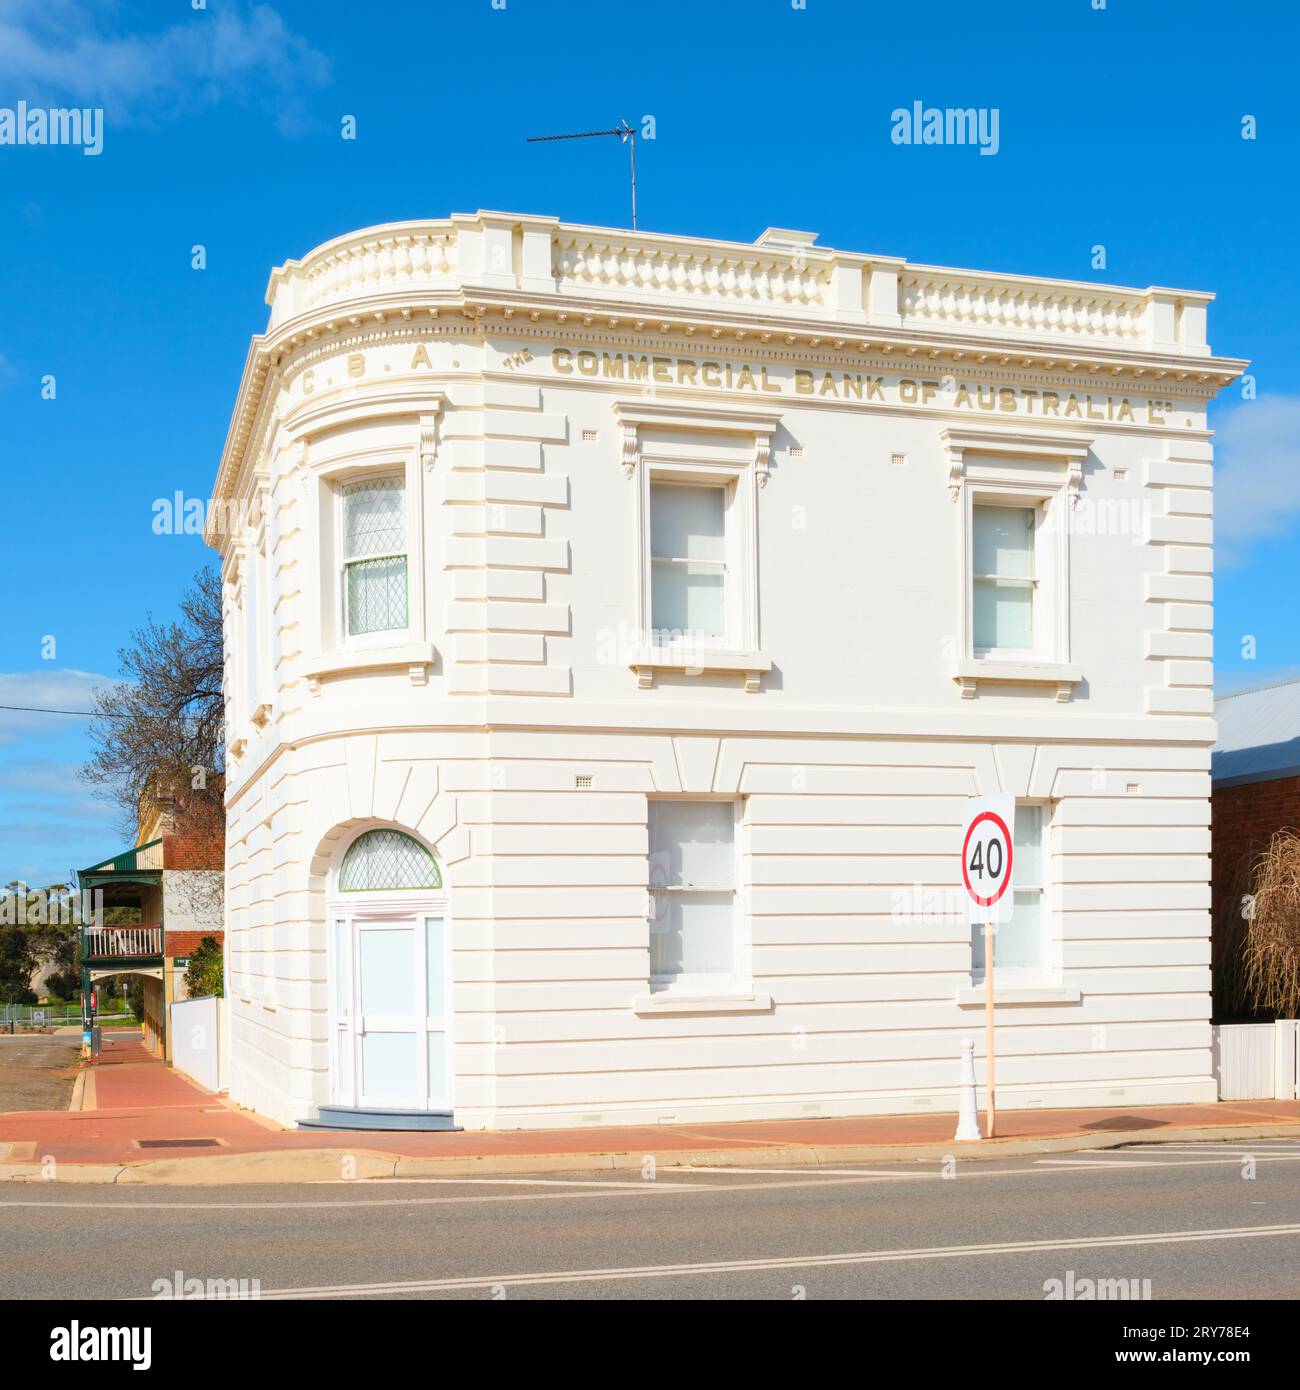 Un'immagine quadrata dello storico edificio della Commercial Bank of Australia nella città di Pingelly, nell'Australia Occidentale. Foto Stock